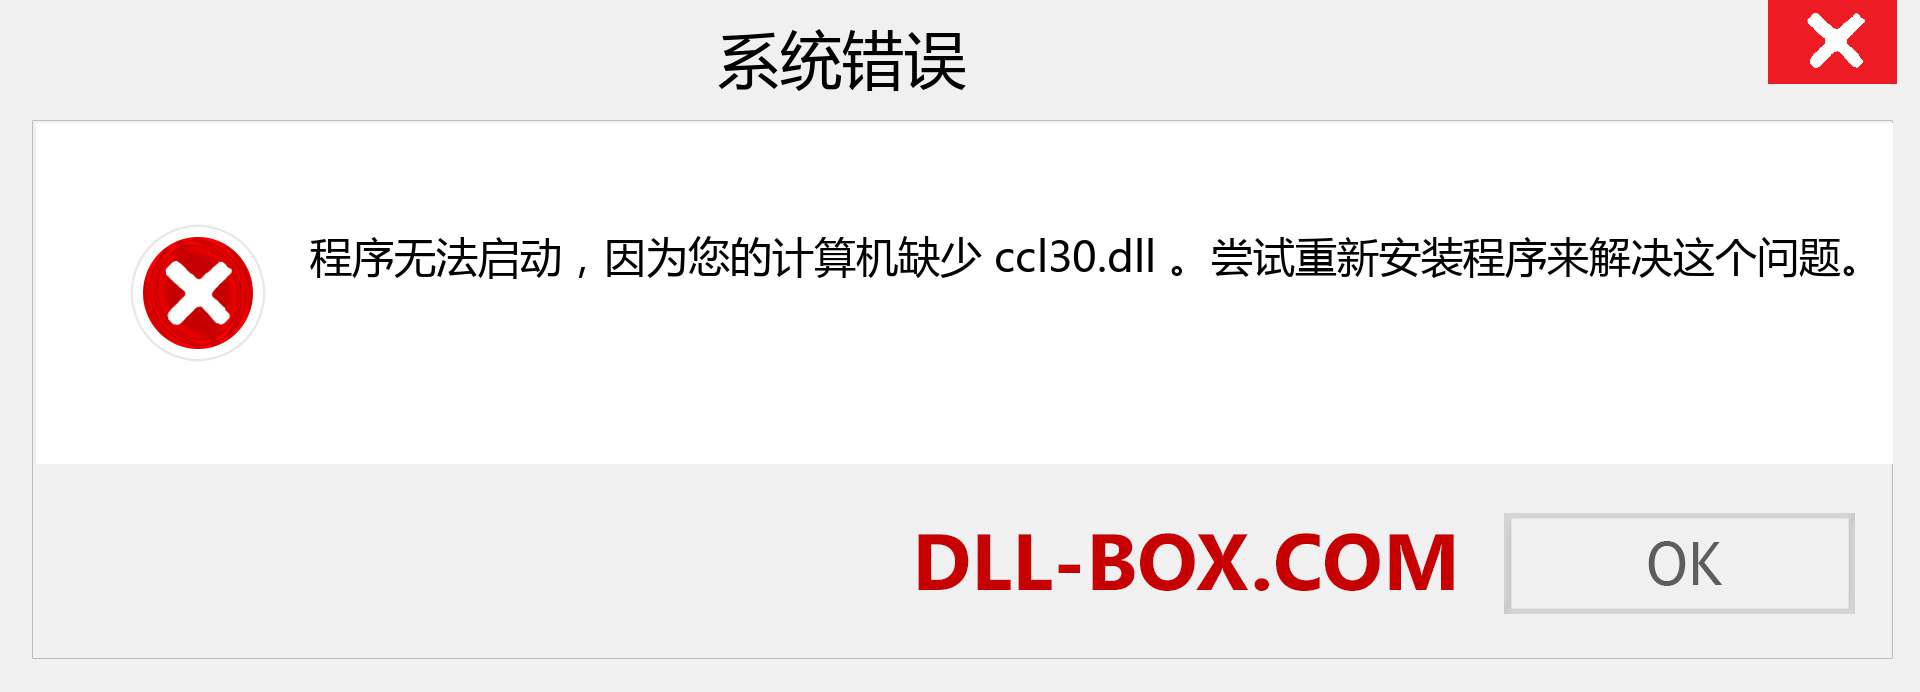 ccl30.dll 文件丢失？。 适用于 Windows 7、8、10 的下载 - 修复 Windows、照片、图像上的 ccl30 dll 丢失错误